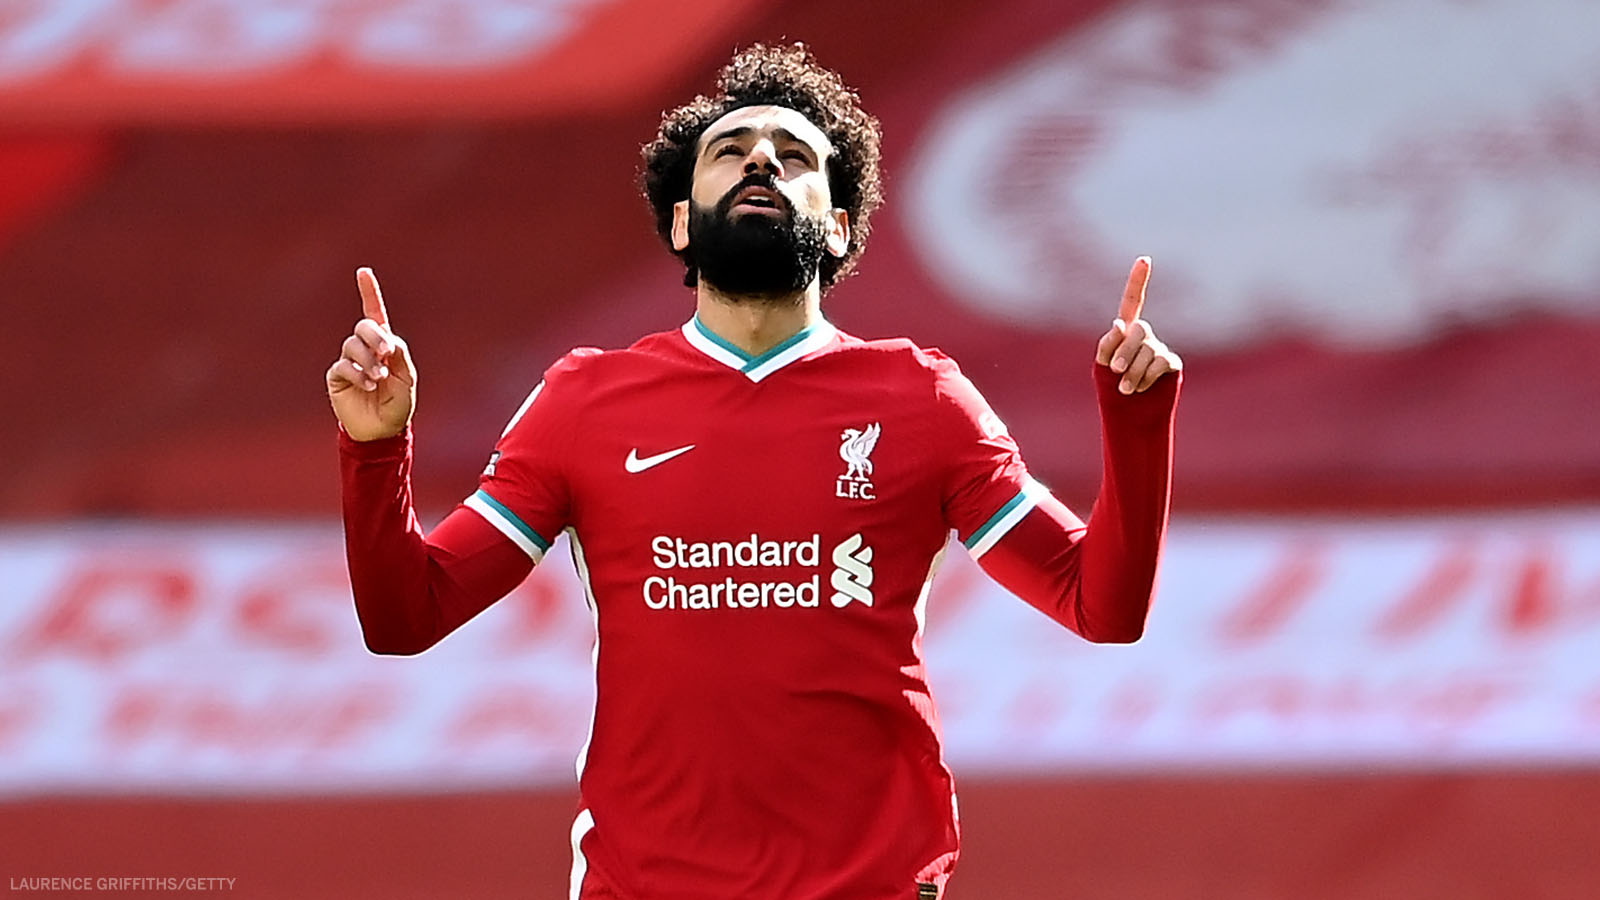 Oubliez Fowler et Suarez, Mohamed Salah devient le roi de Liverpool !